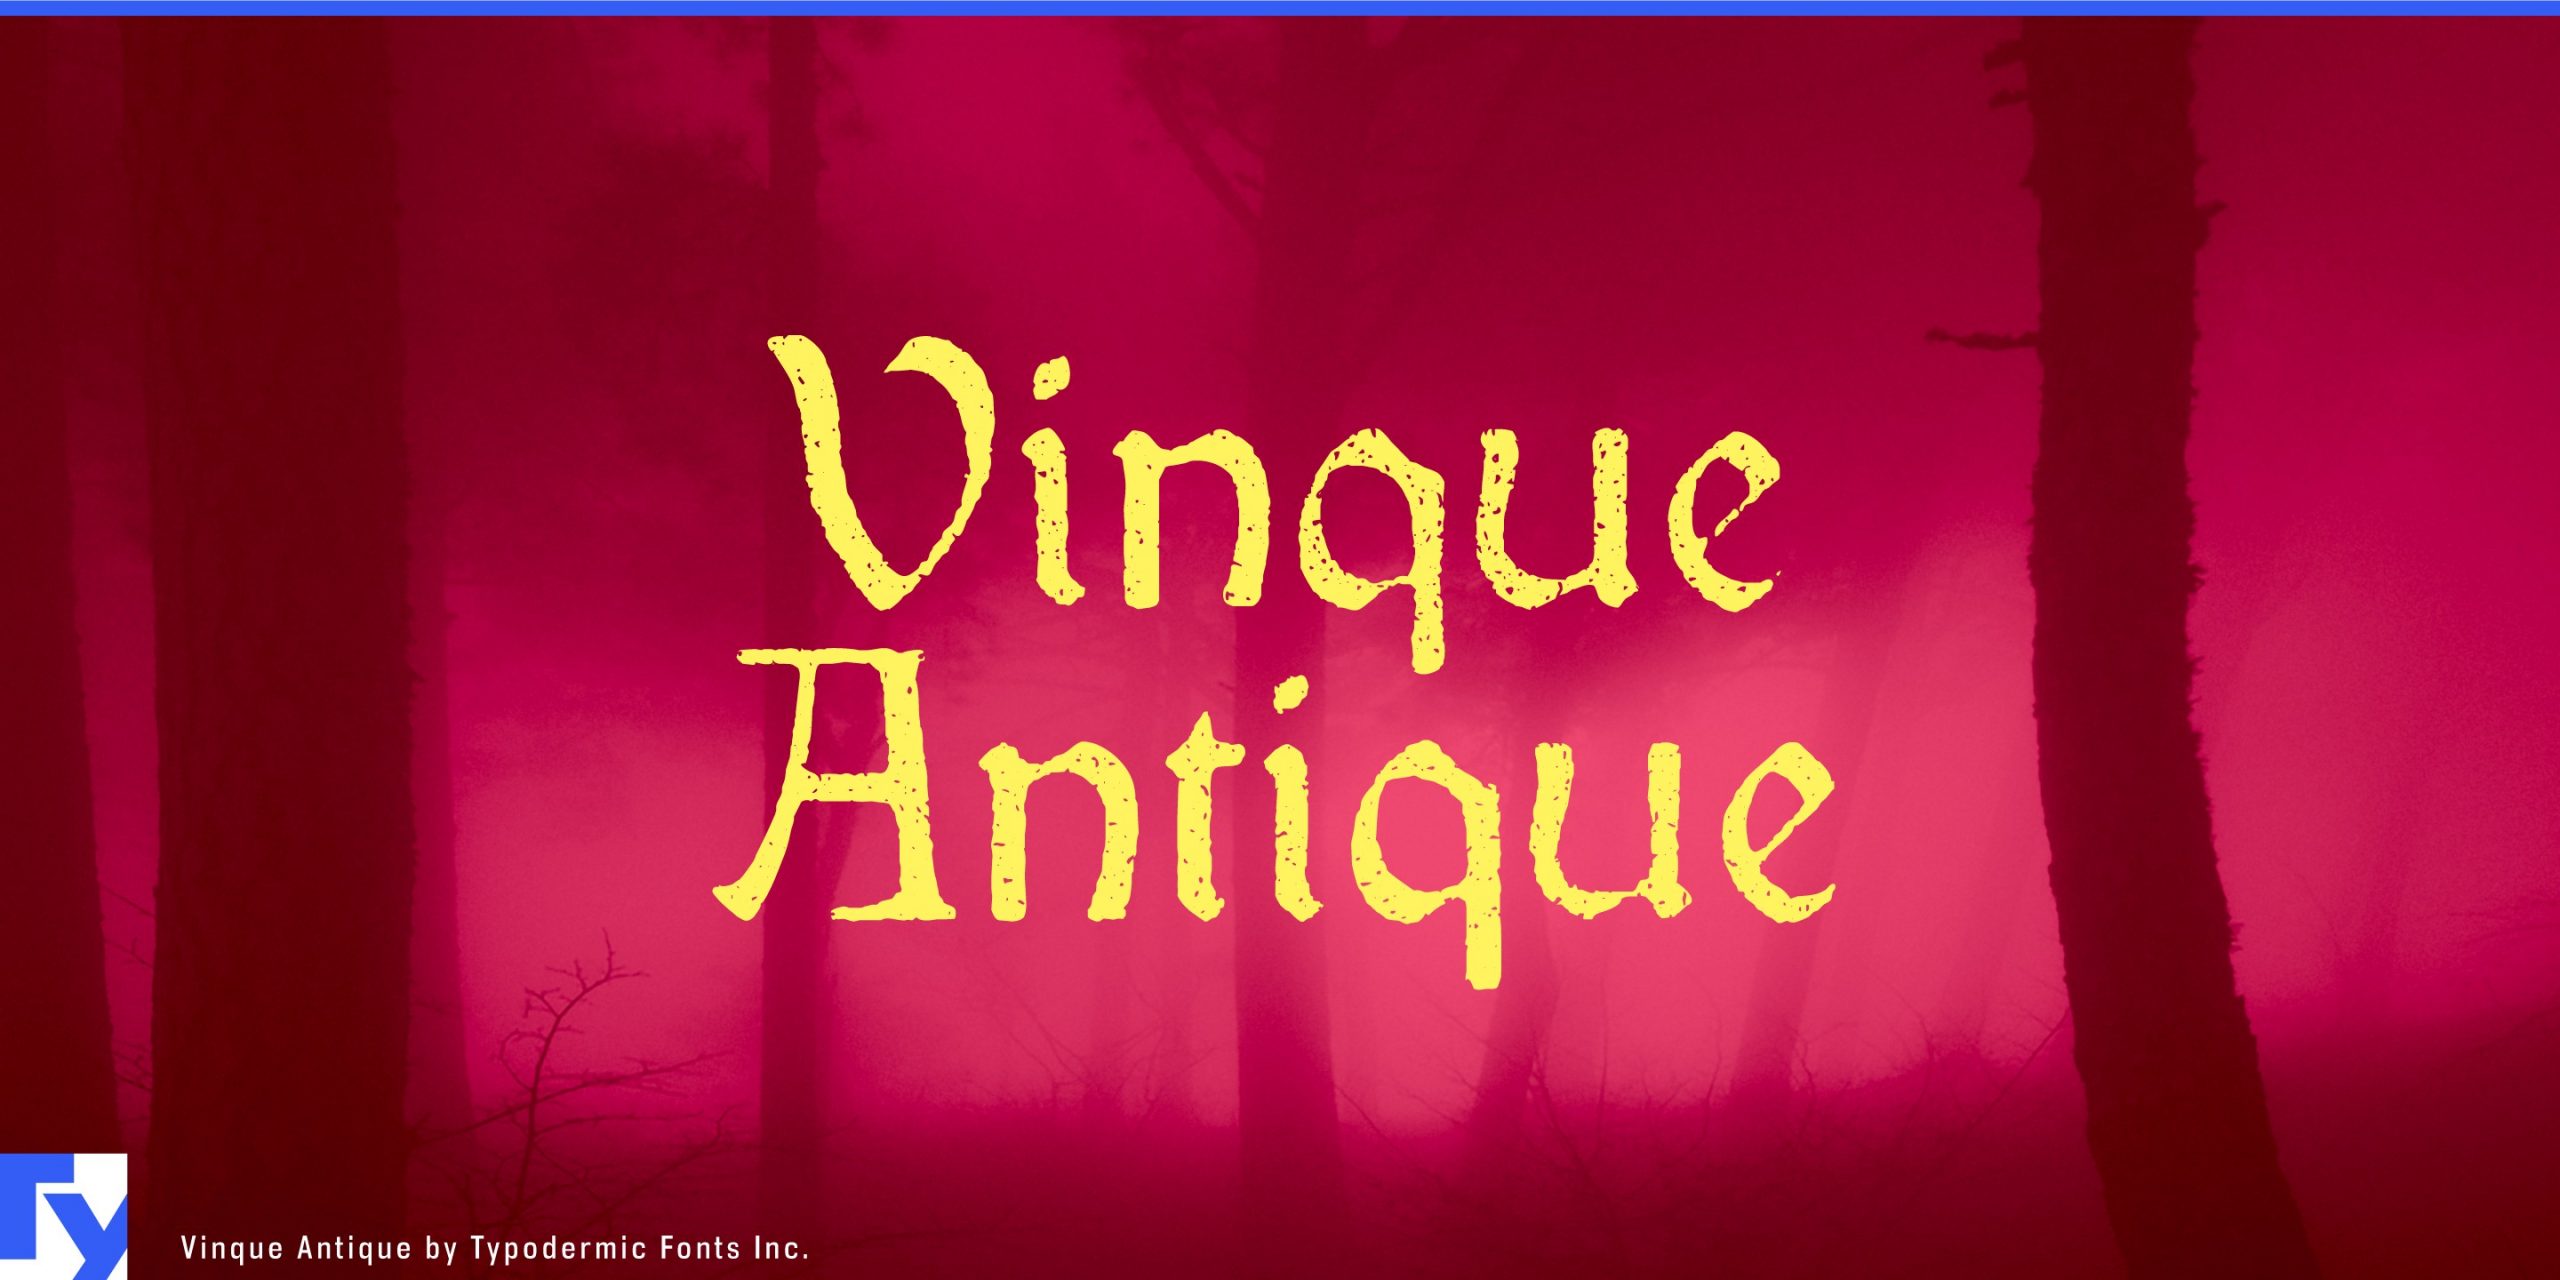 Nostalgic Beauty: Vinque Antique Typeface Captures a Bygone Era